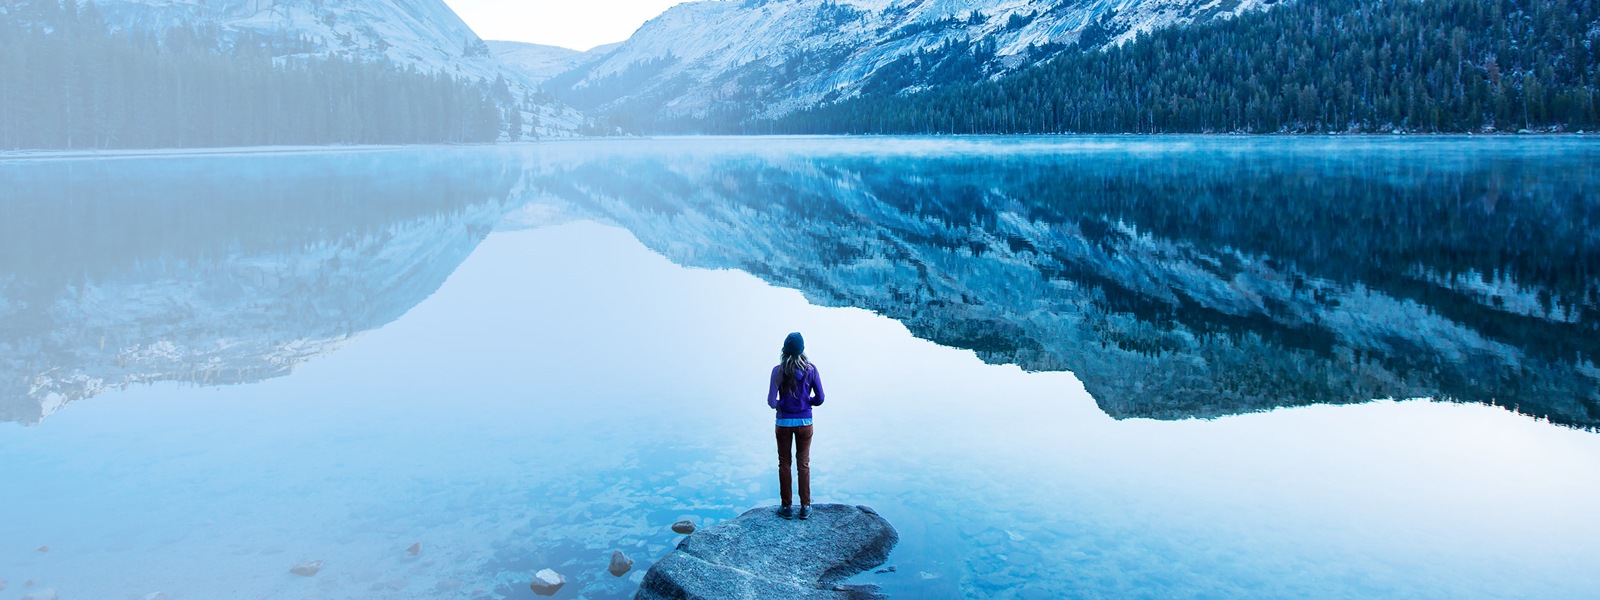 Une femme se tient au bord d'un lac entouré de montagnes enneigées